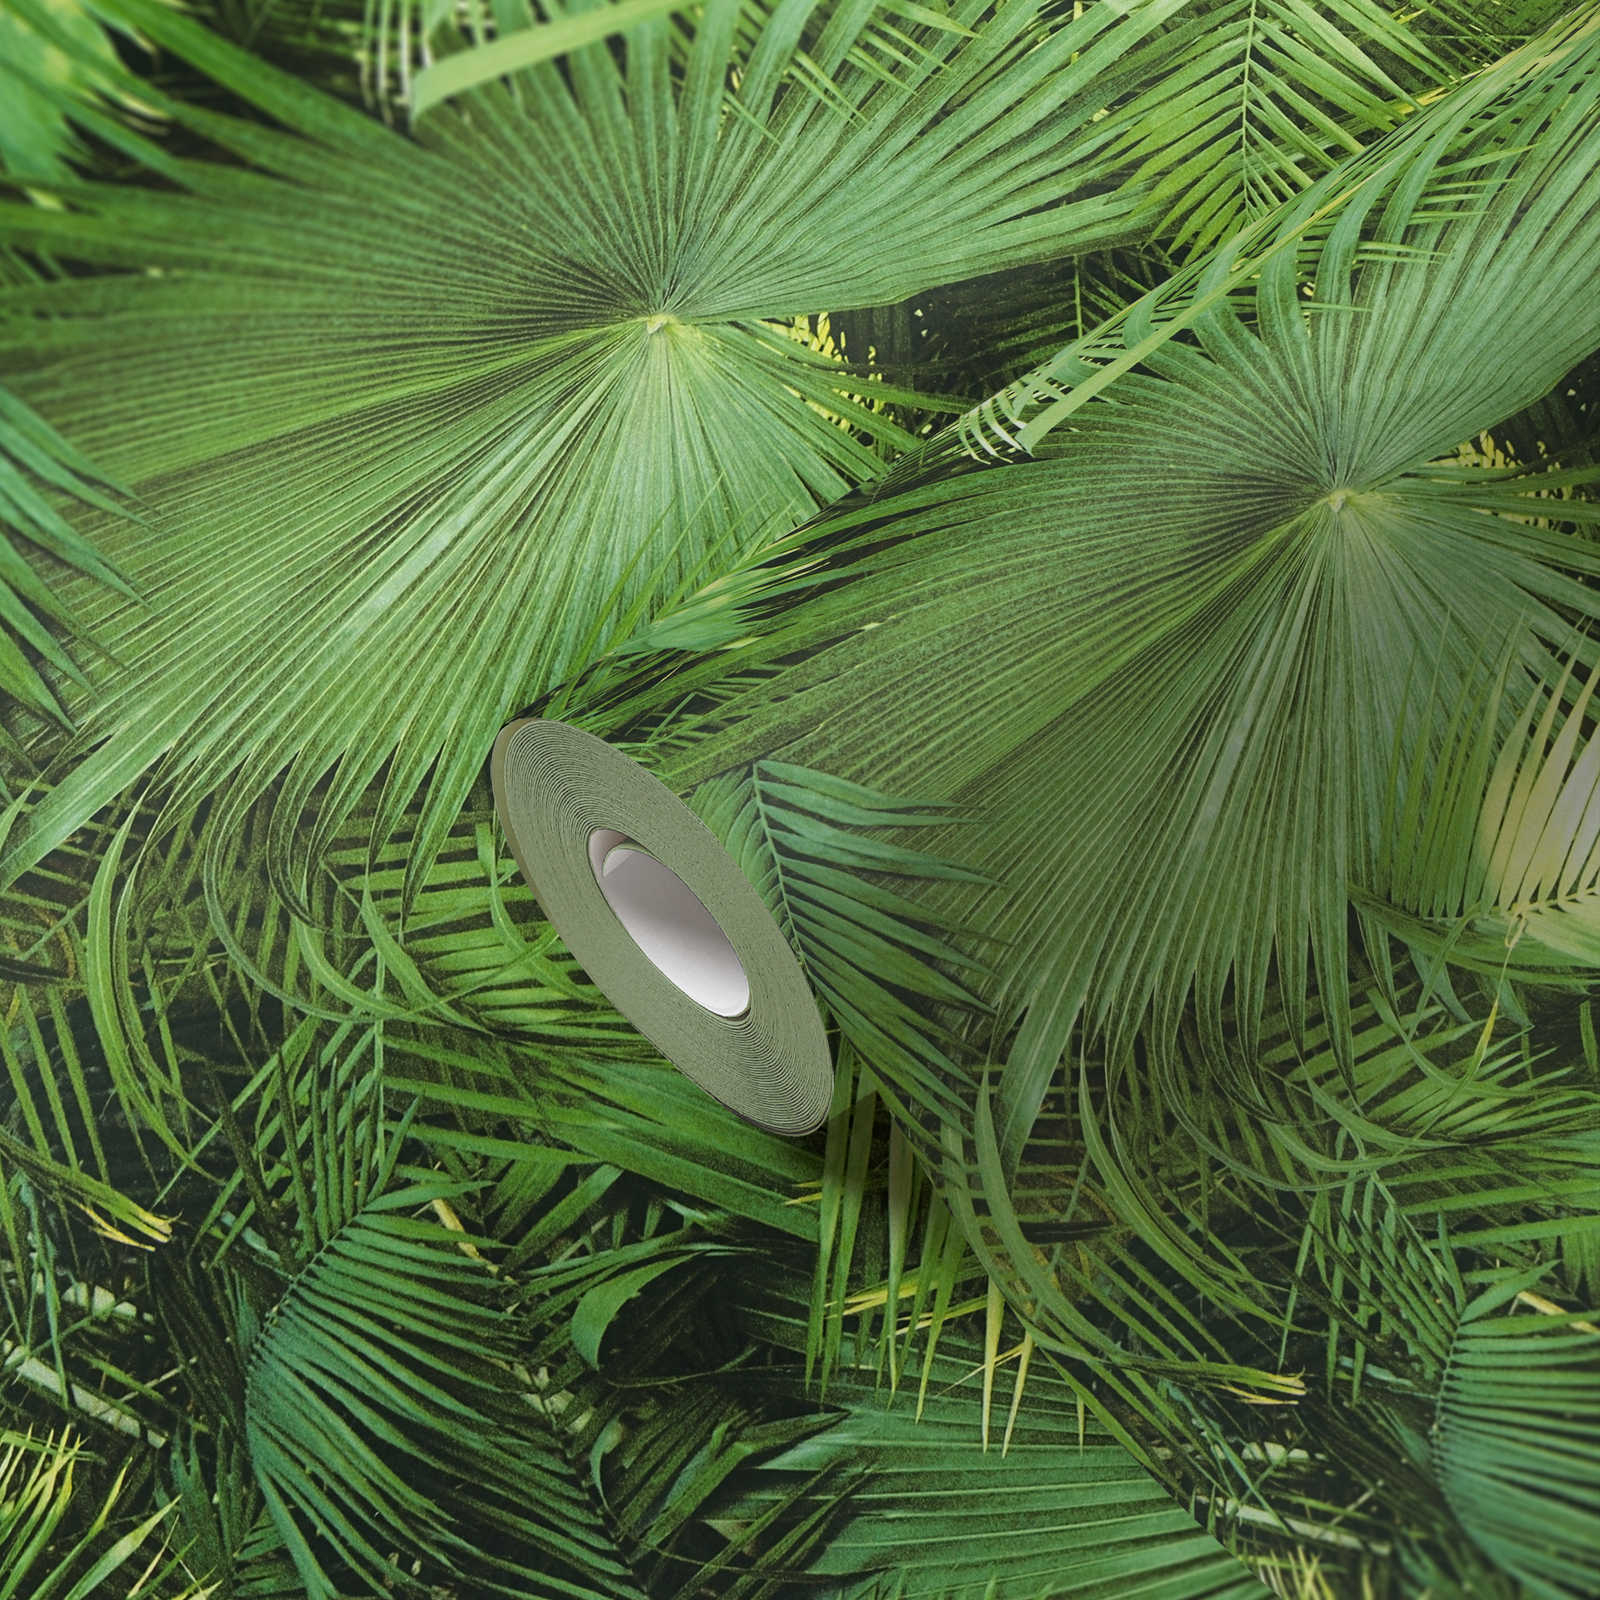             Selbstklebende Tapete | Dschungel-Blätter Muster grüner Urwald
        